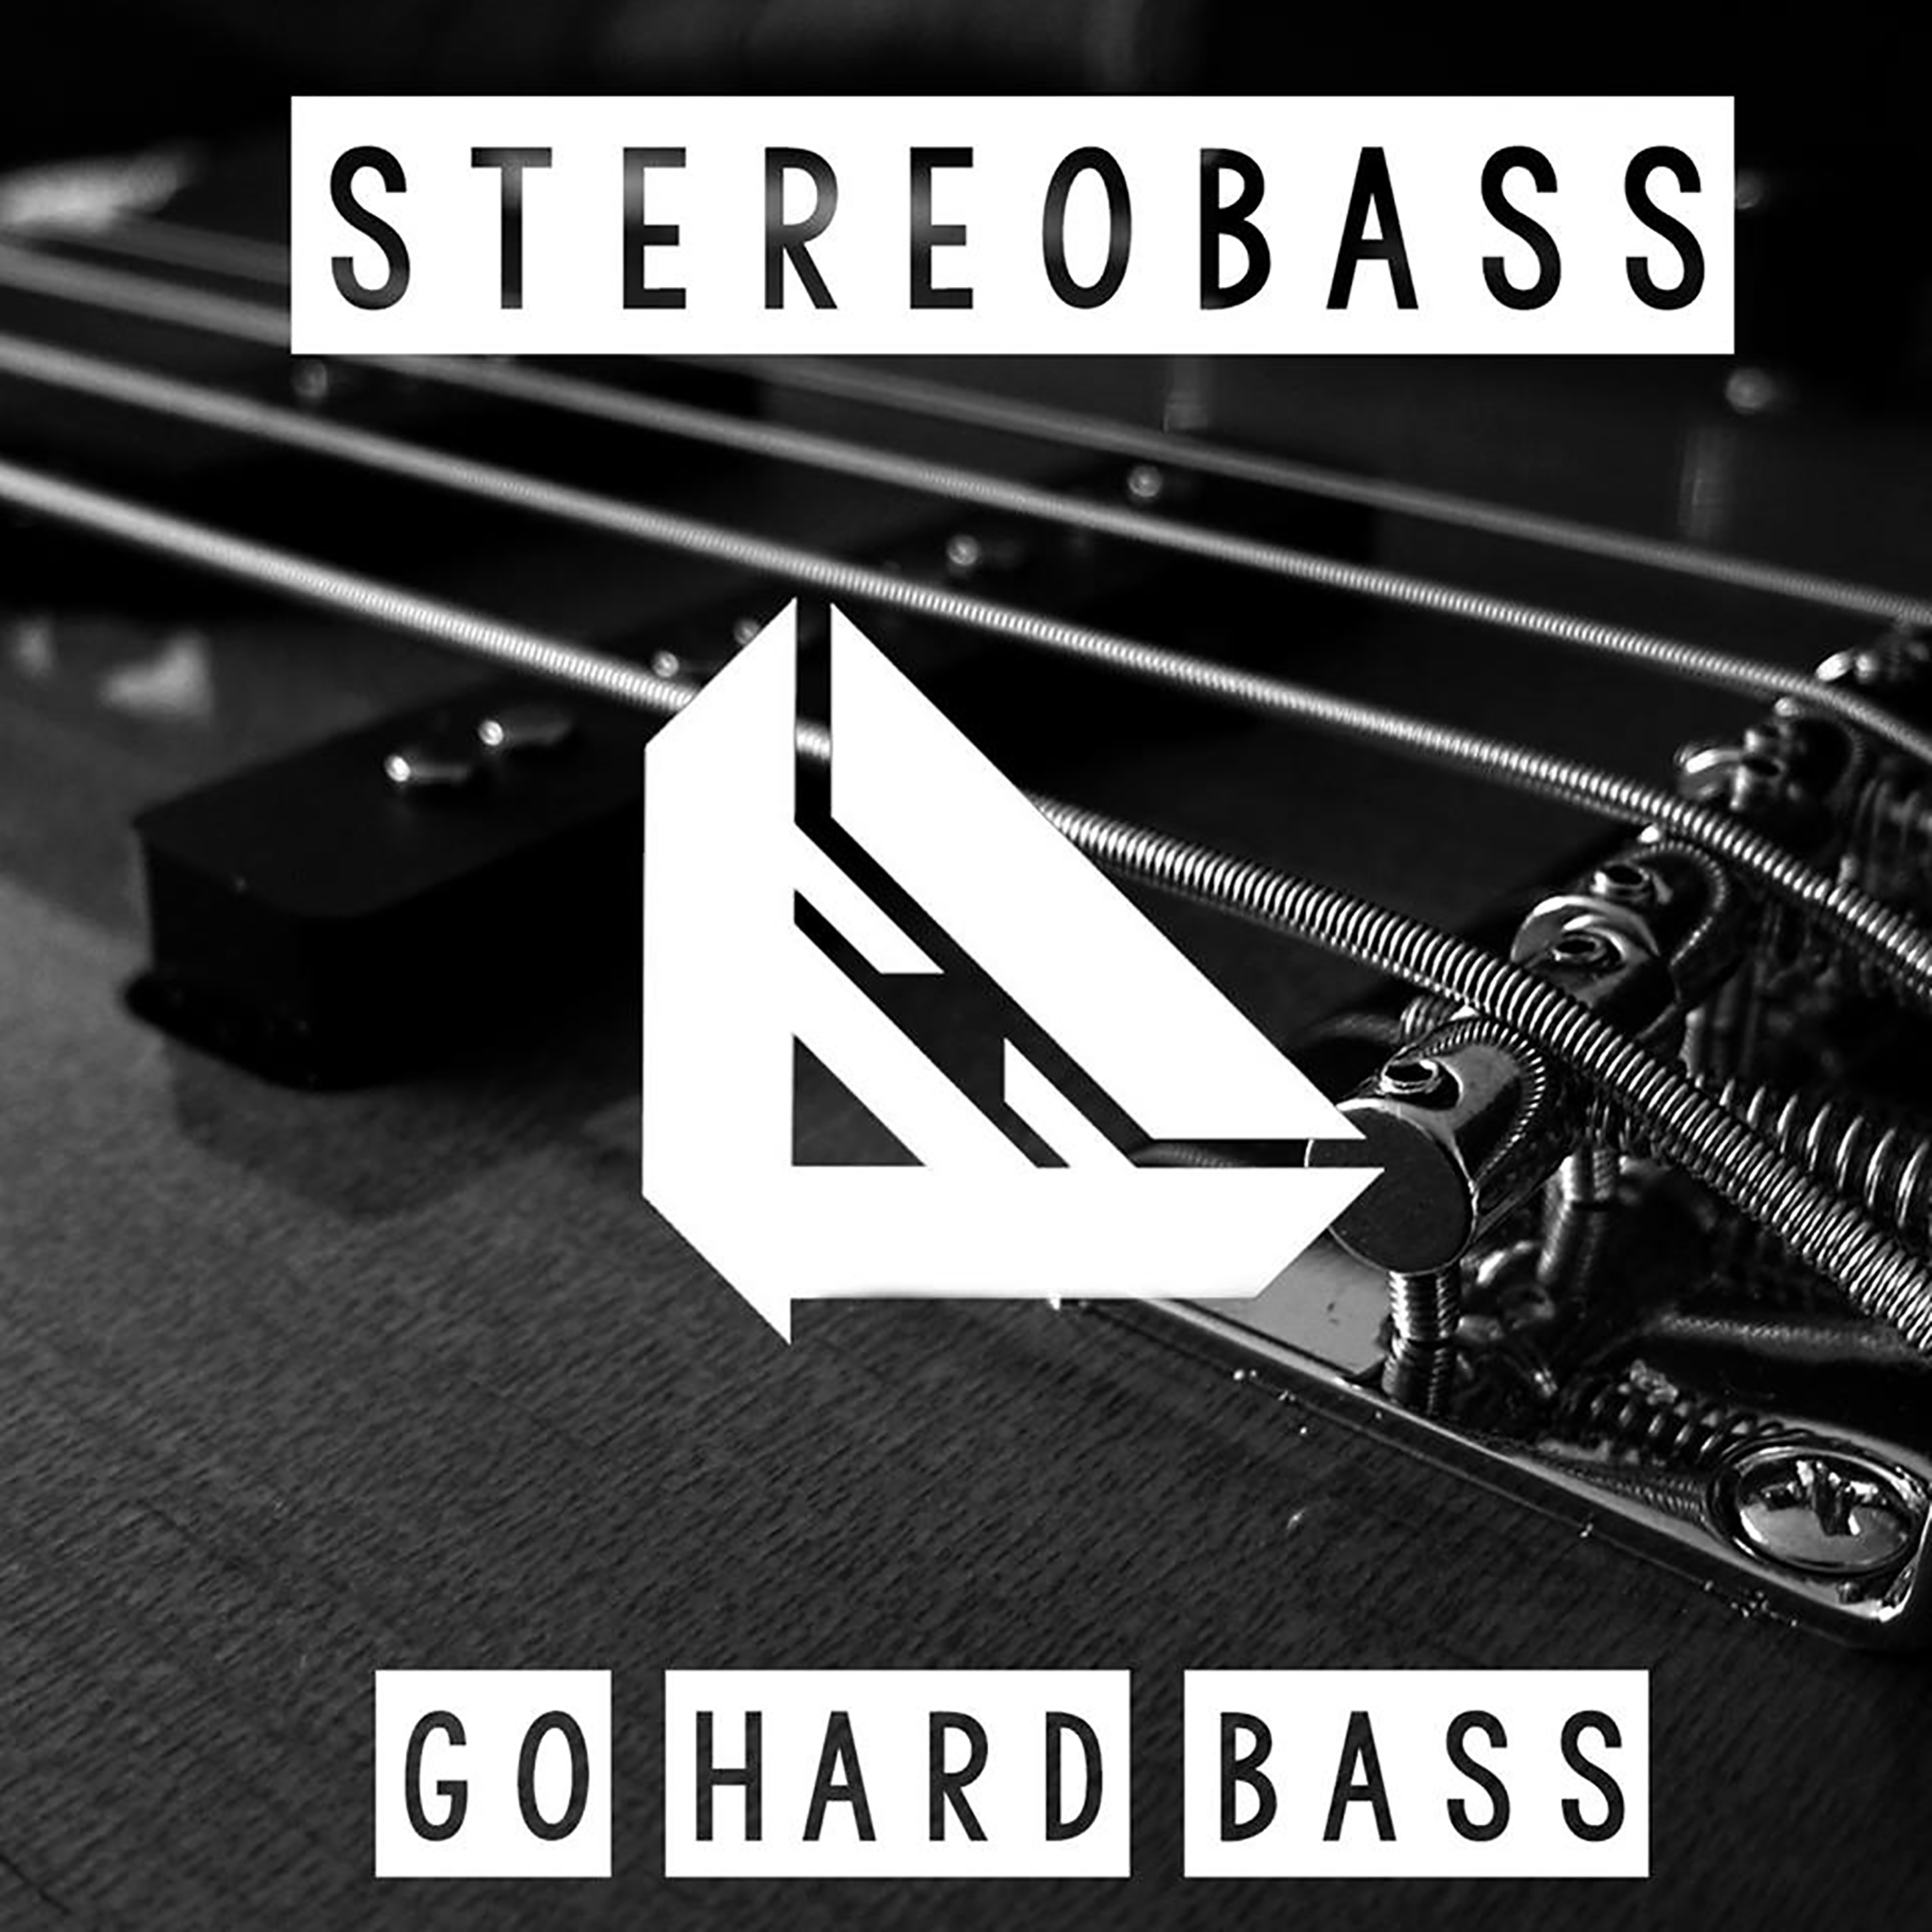 Песни с басами со словами. Жесткий басс. Go hard текст. Музыка hard Bass. Bass фото текст.